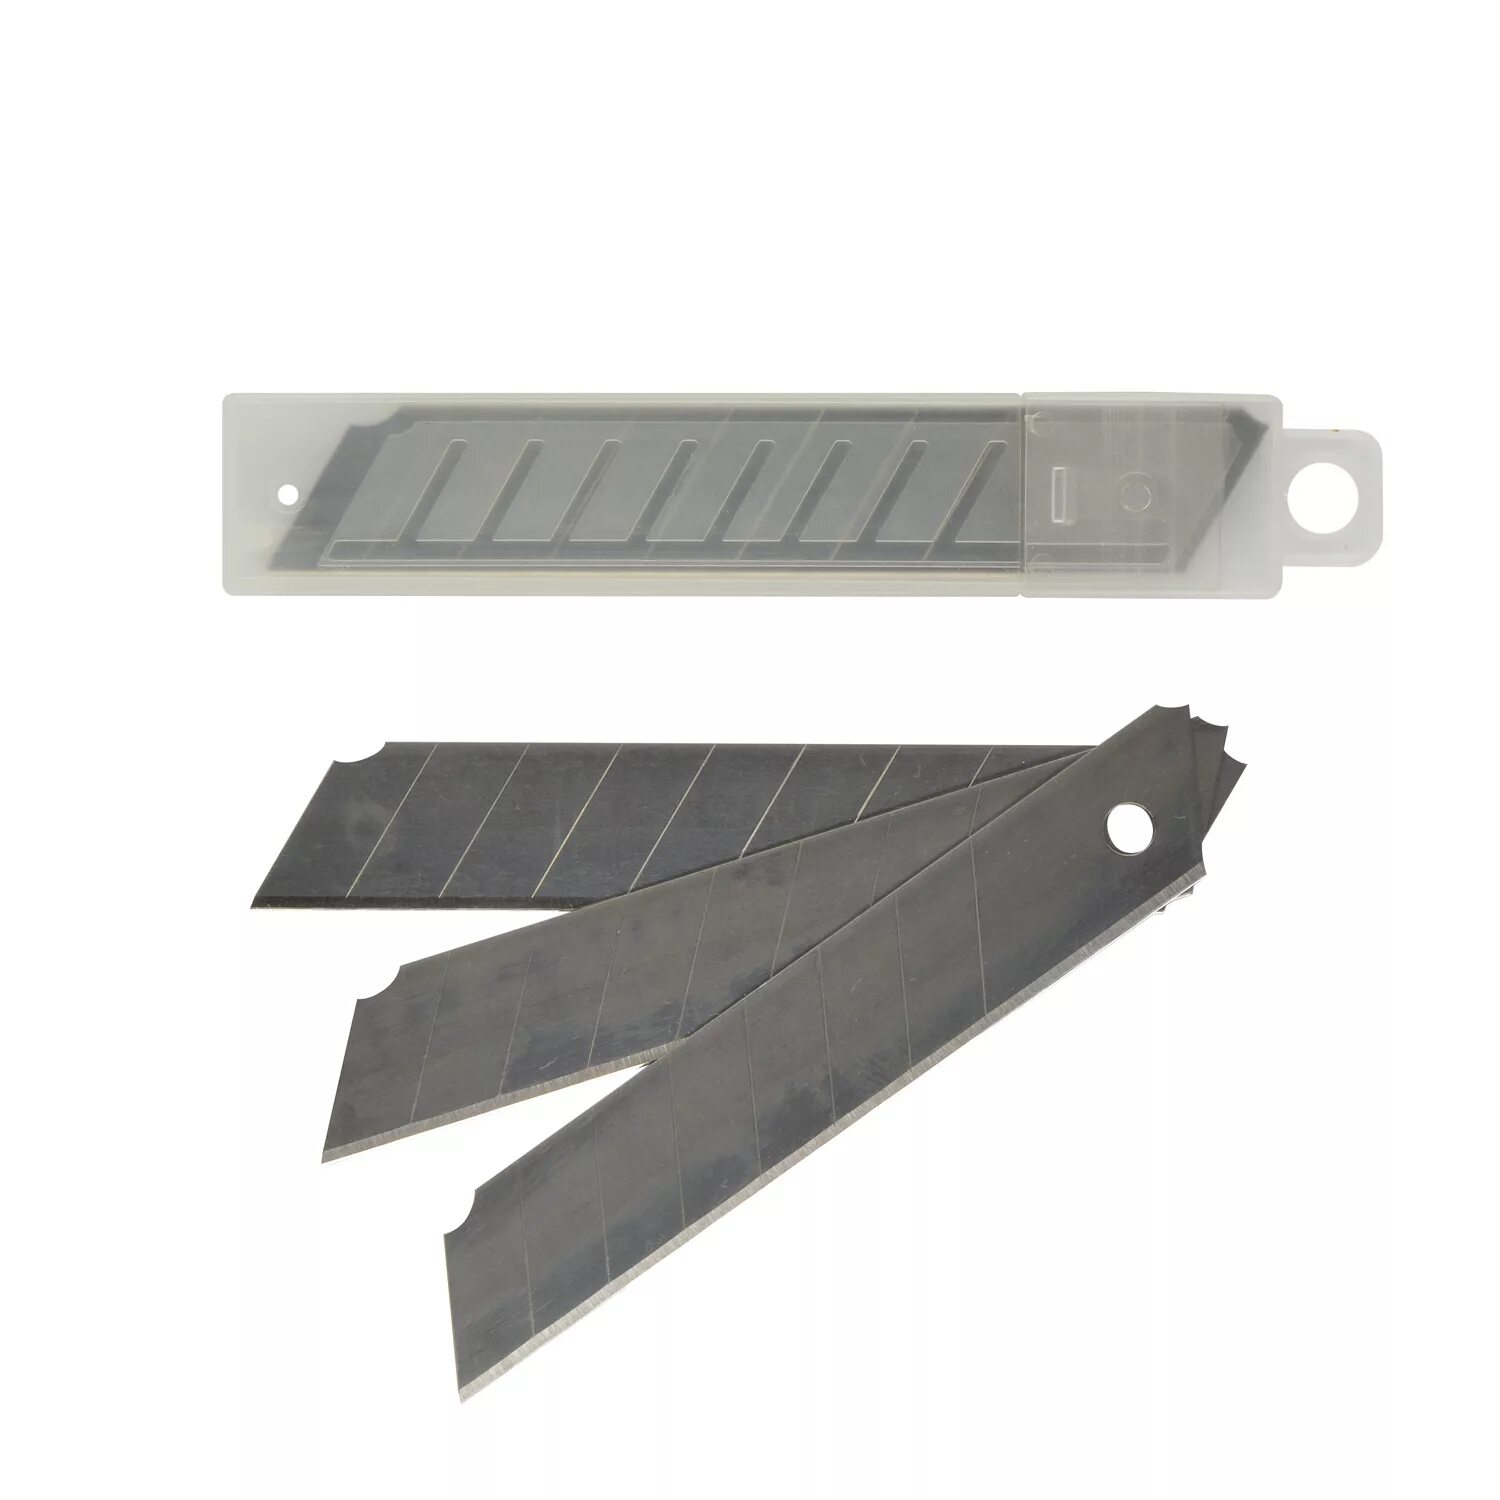 Santool лезвия для ножа 18мм. Лезвия для ножа 18 мм (20/ 400) vertextools. Лезвия сменные для ножа 18мм 10шт Vertex.